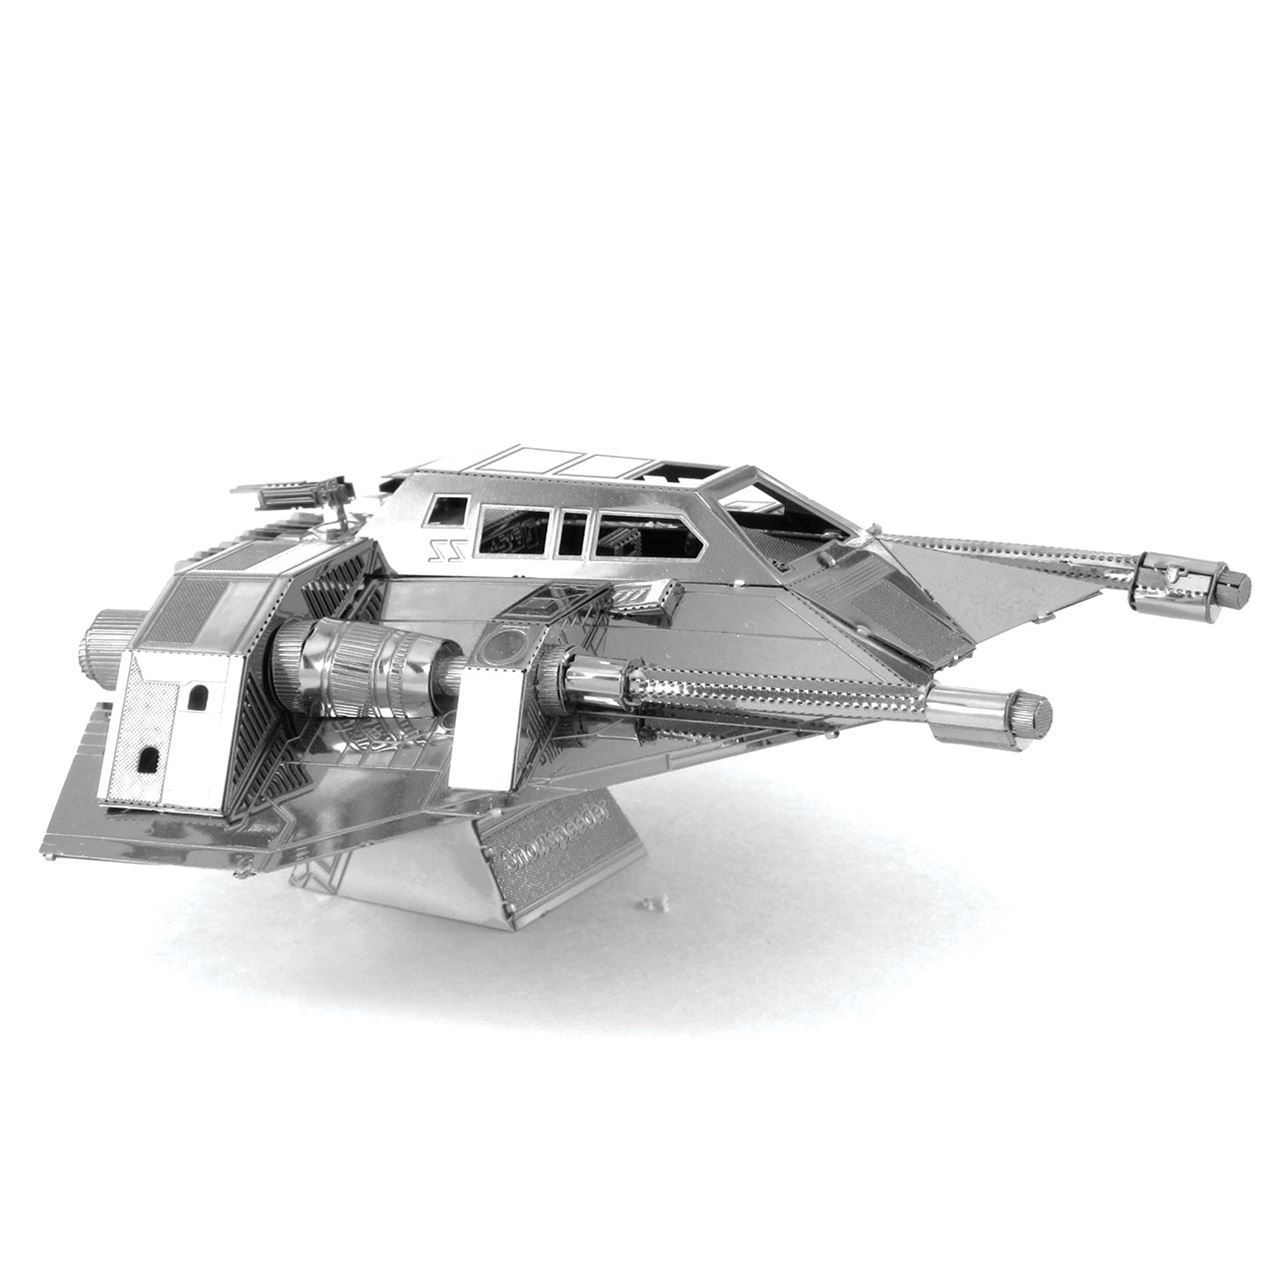 STAR WARS Snowspeeder Metal Earth 3D Metal Model Kit Free Shipping!! 